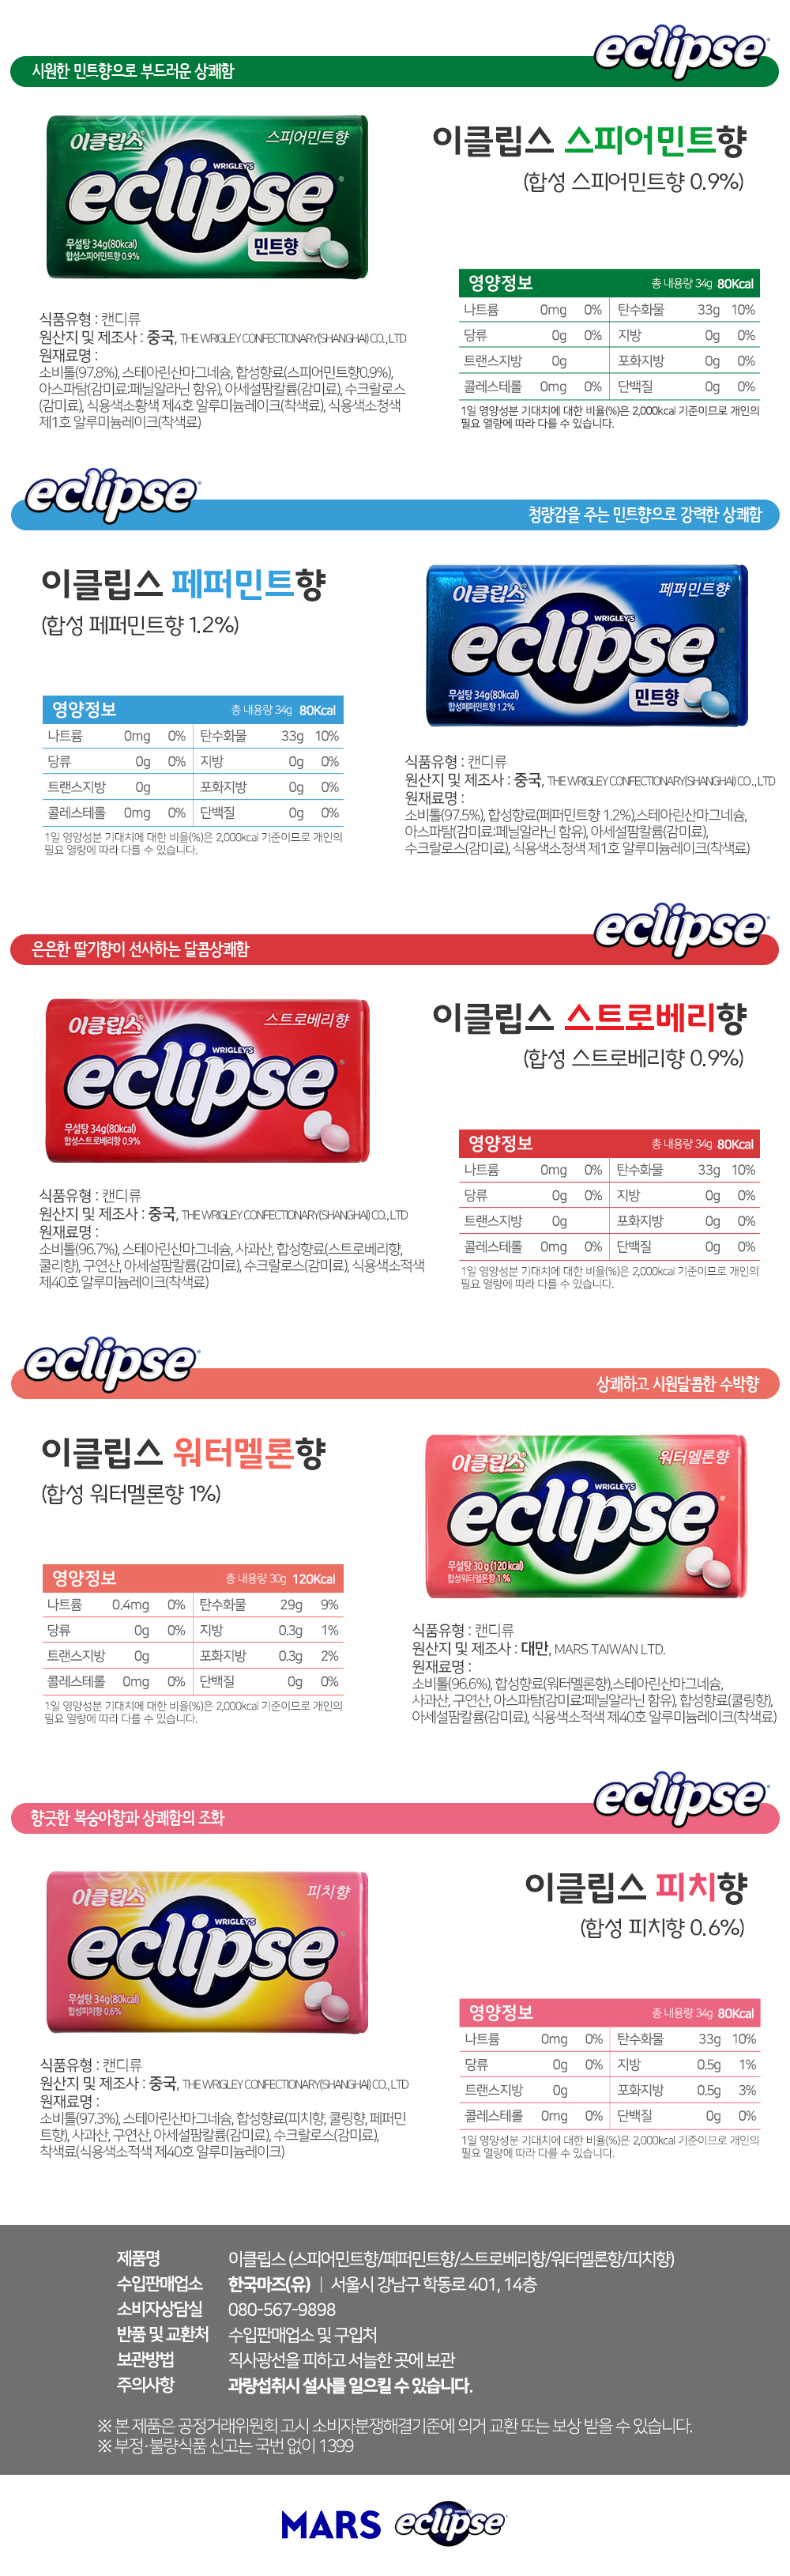 web_eclipse_1ea_interbiz_130215.jpg